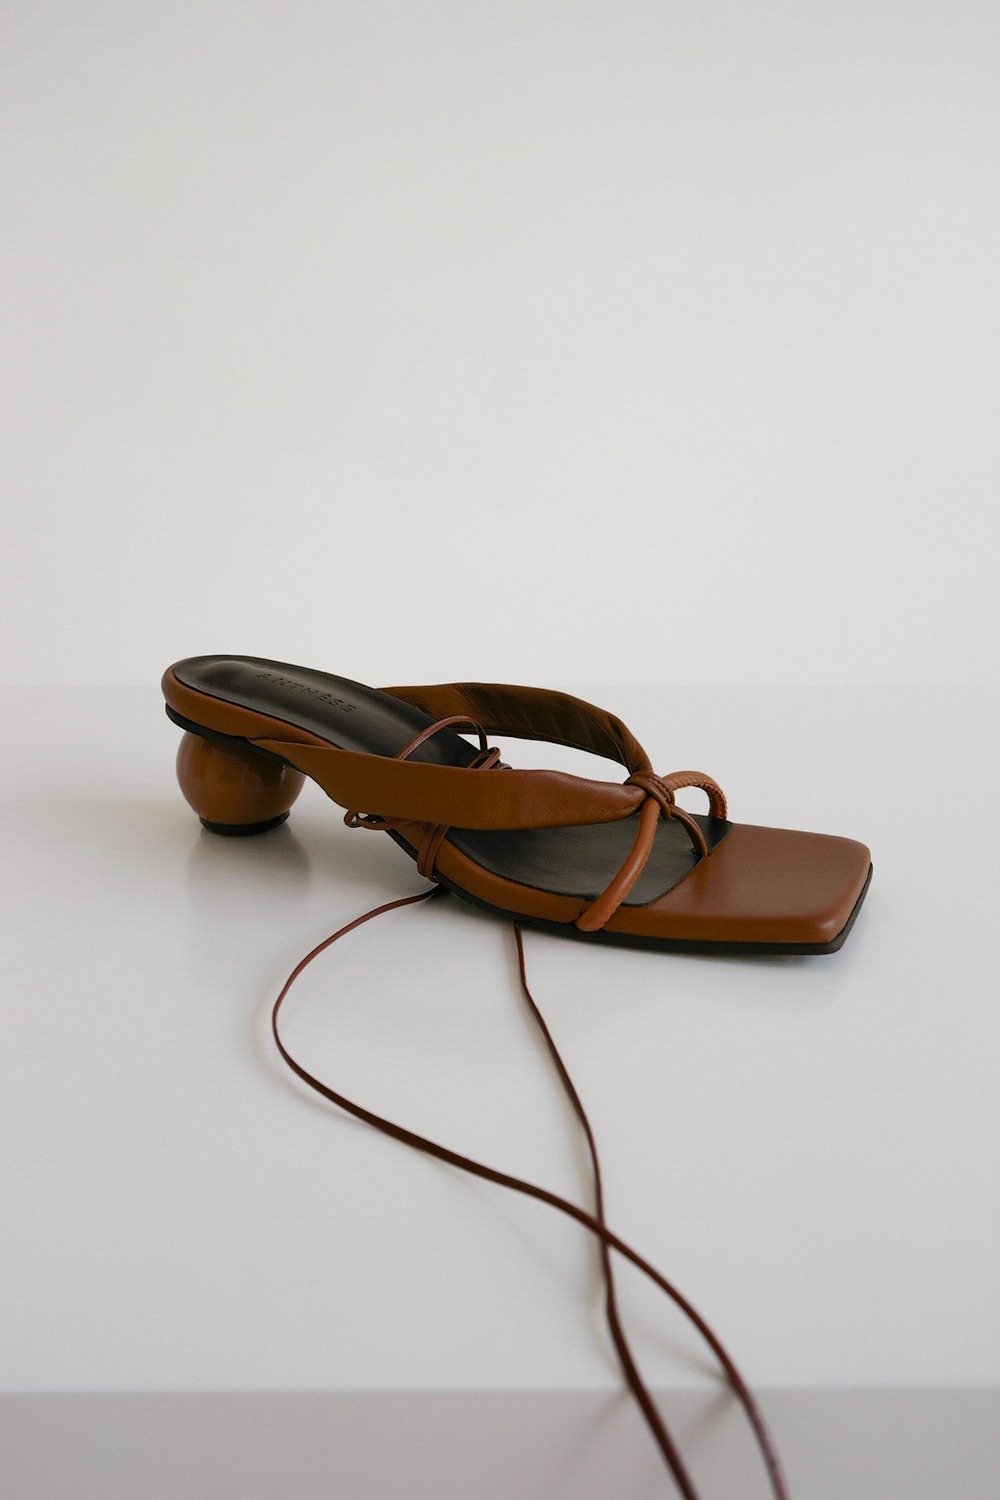 ANTHÈSE Rocher strap sandal, mix brown (10%)